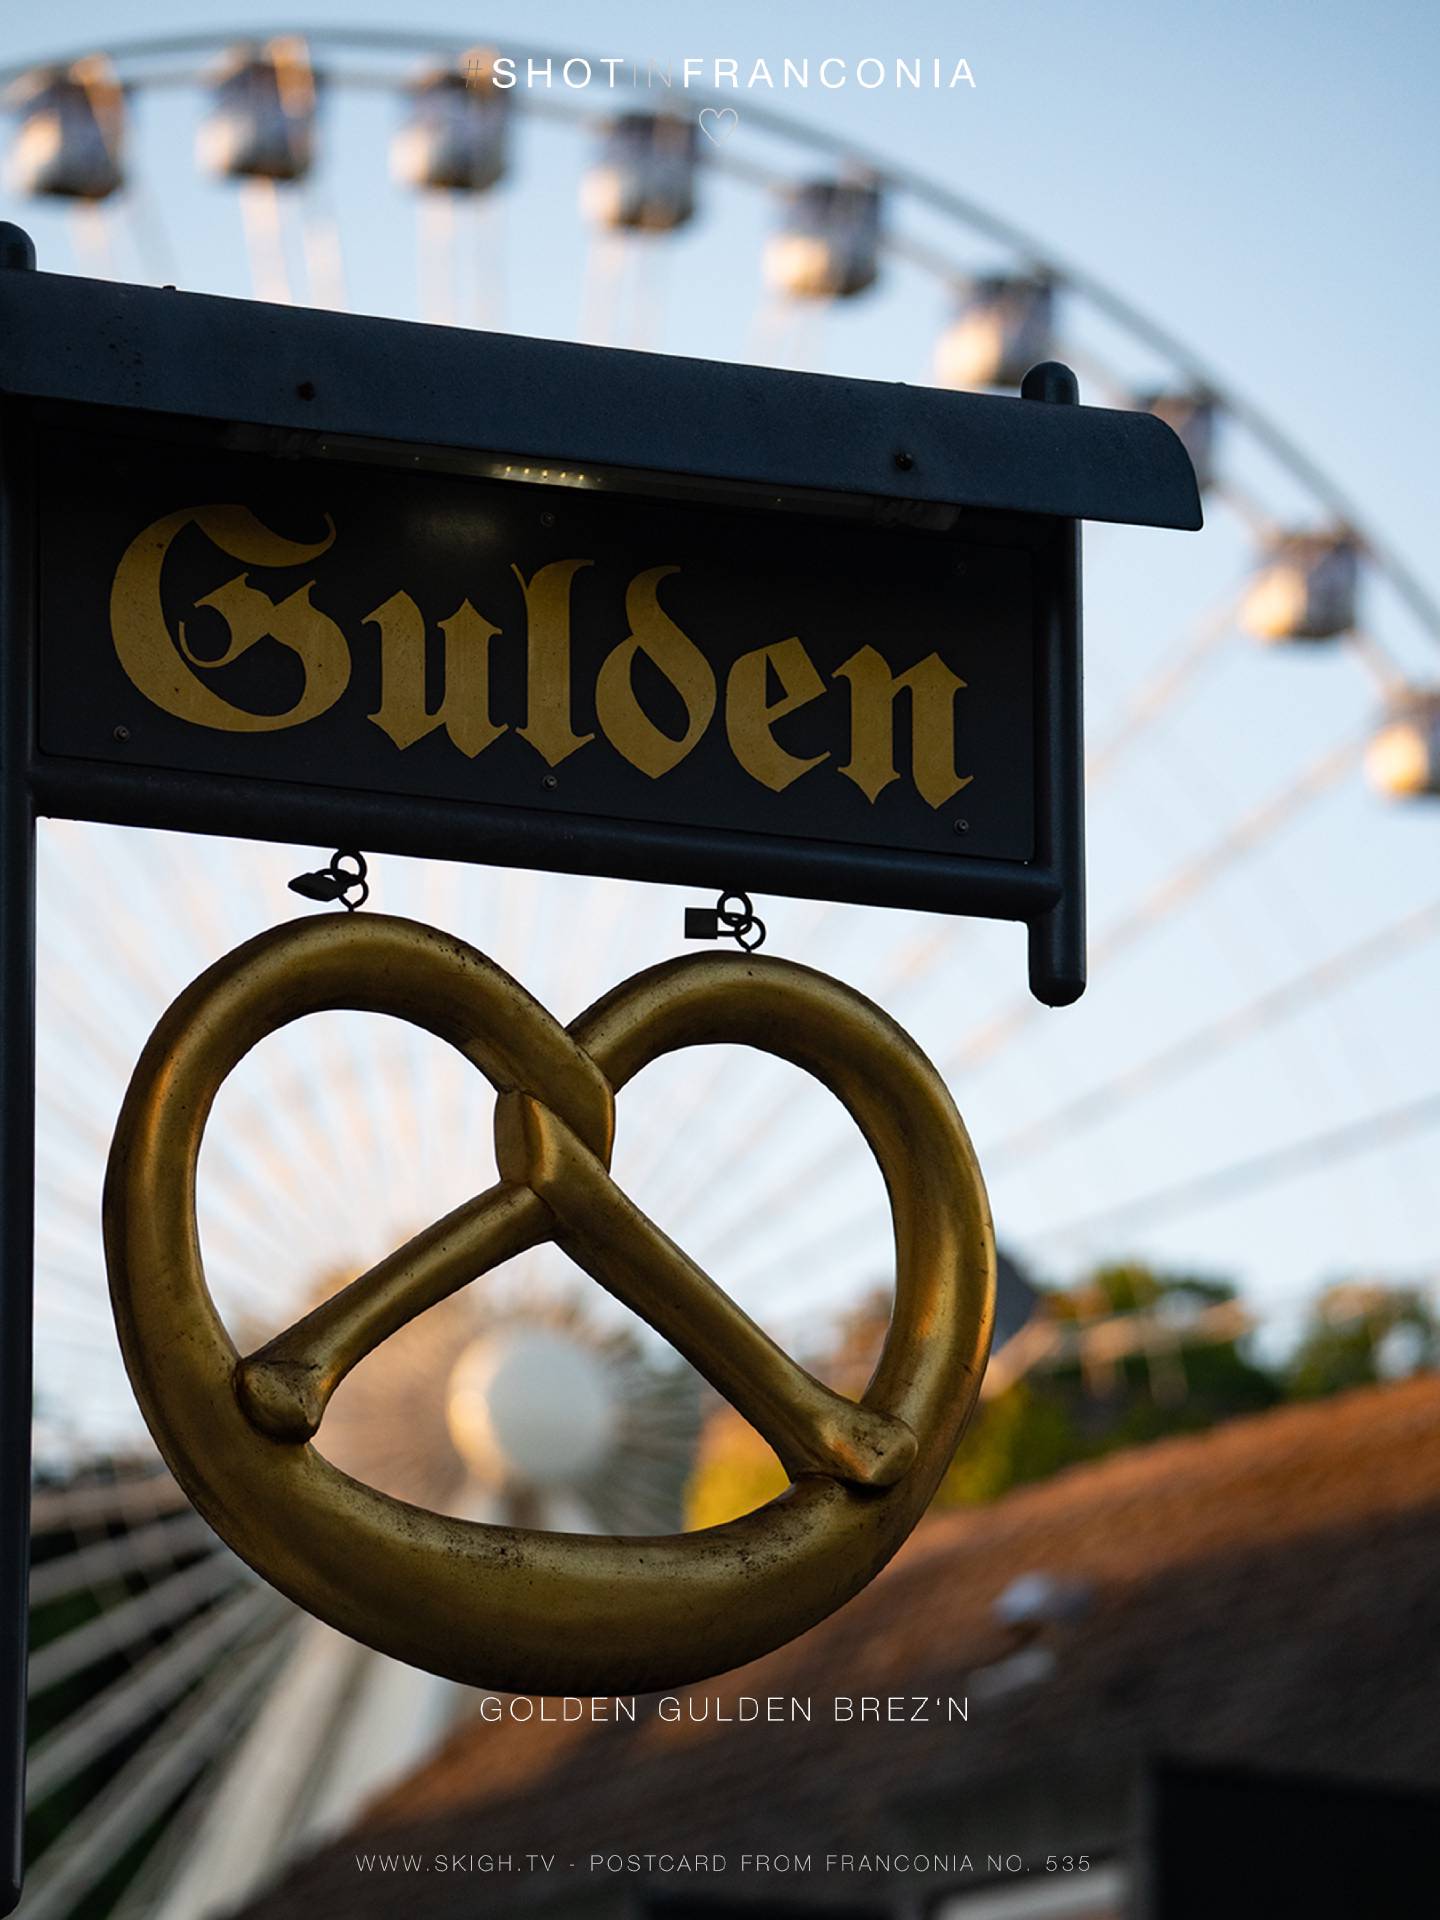 Golden Gulden Brez'n